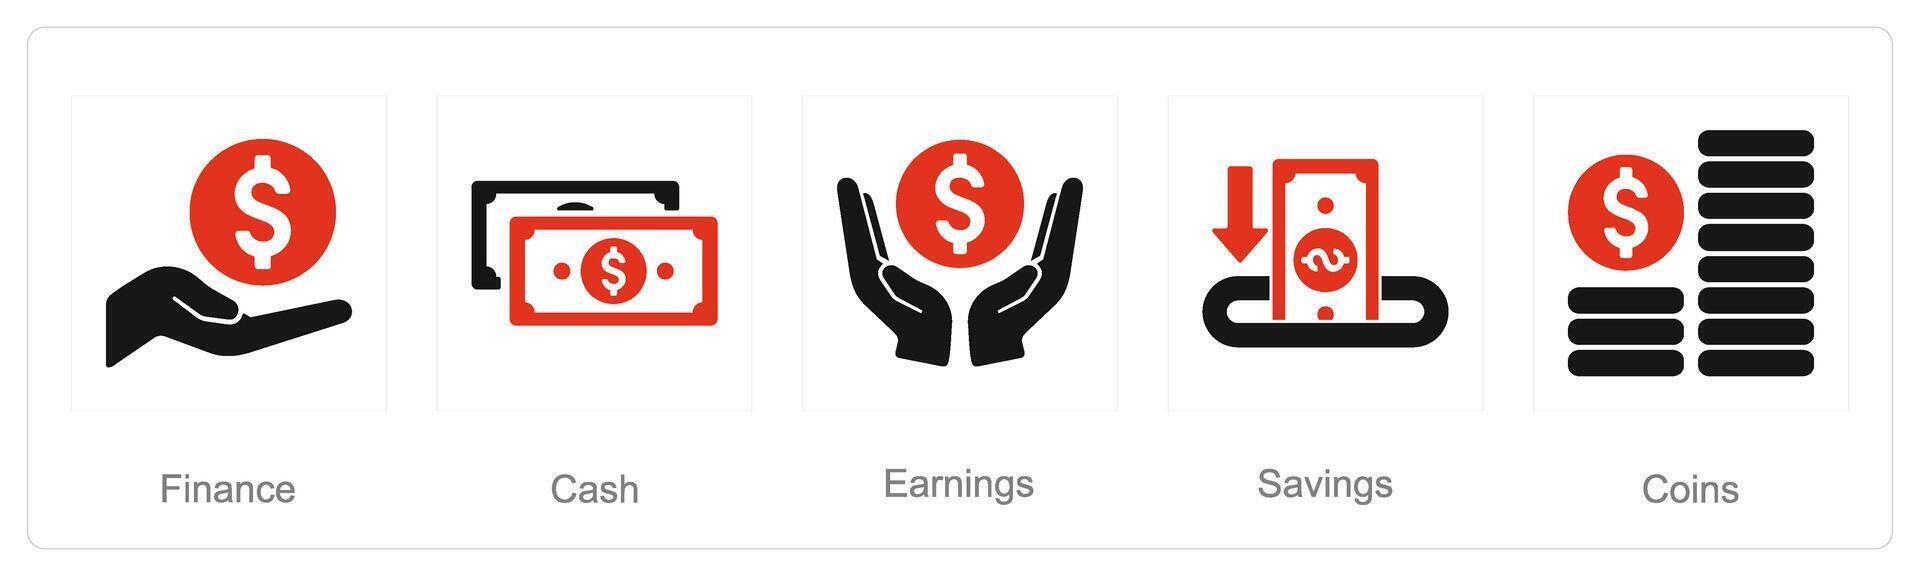 uma conjunto do 5 finança ícones Como finança, dinheiro, ganho vetor